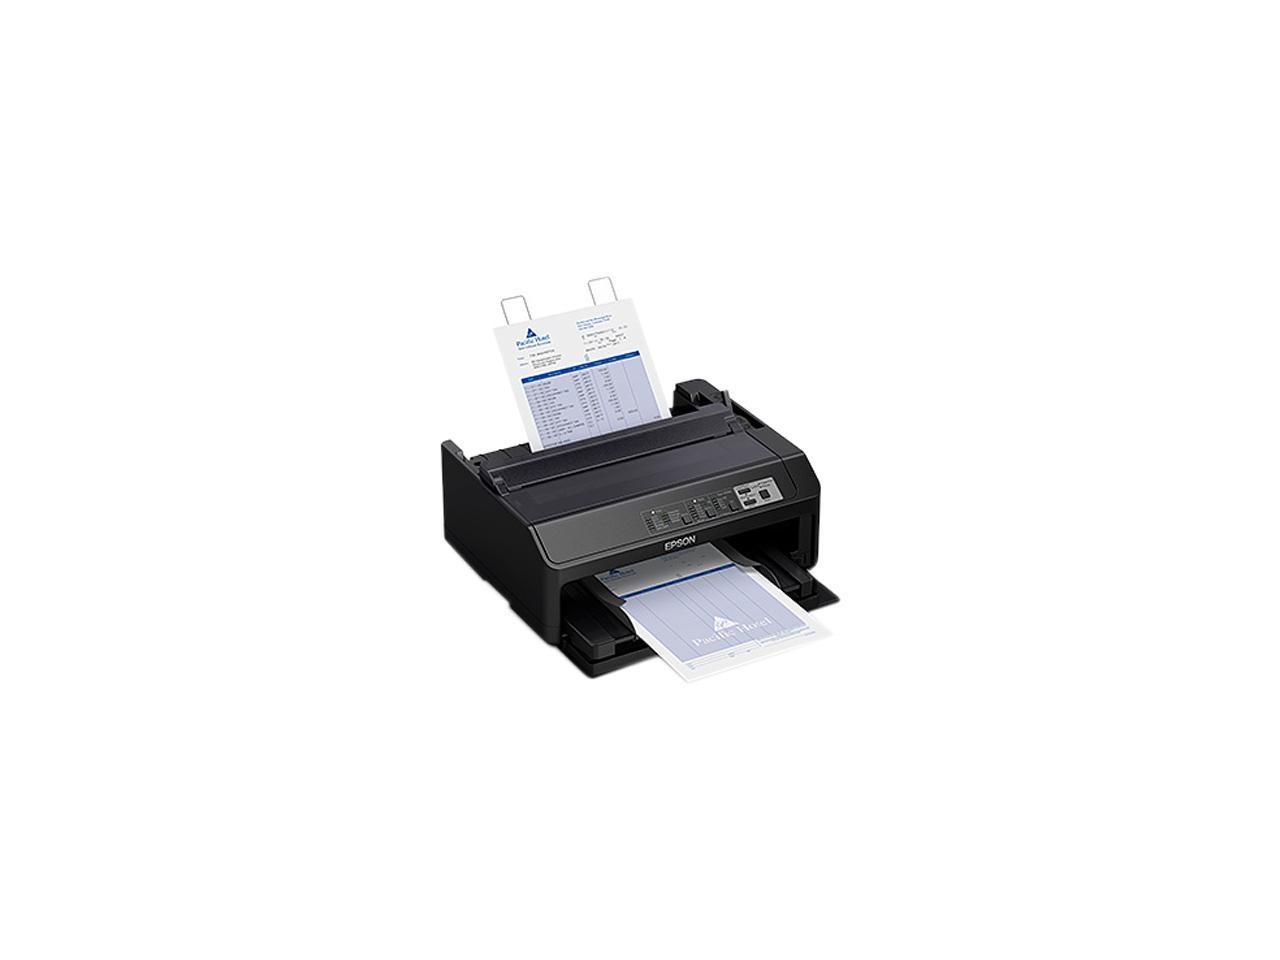 Epson Lq 590ii Monochrome Dot Matrix Printer 4967